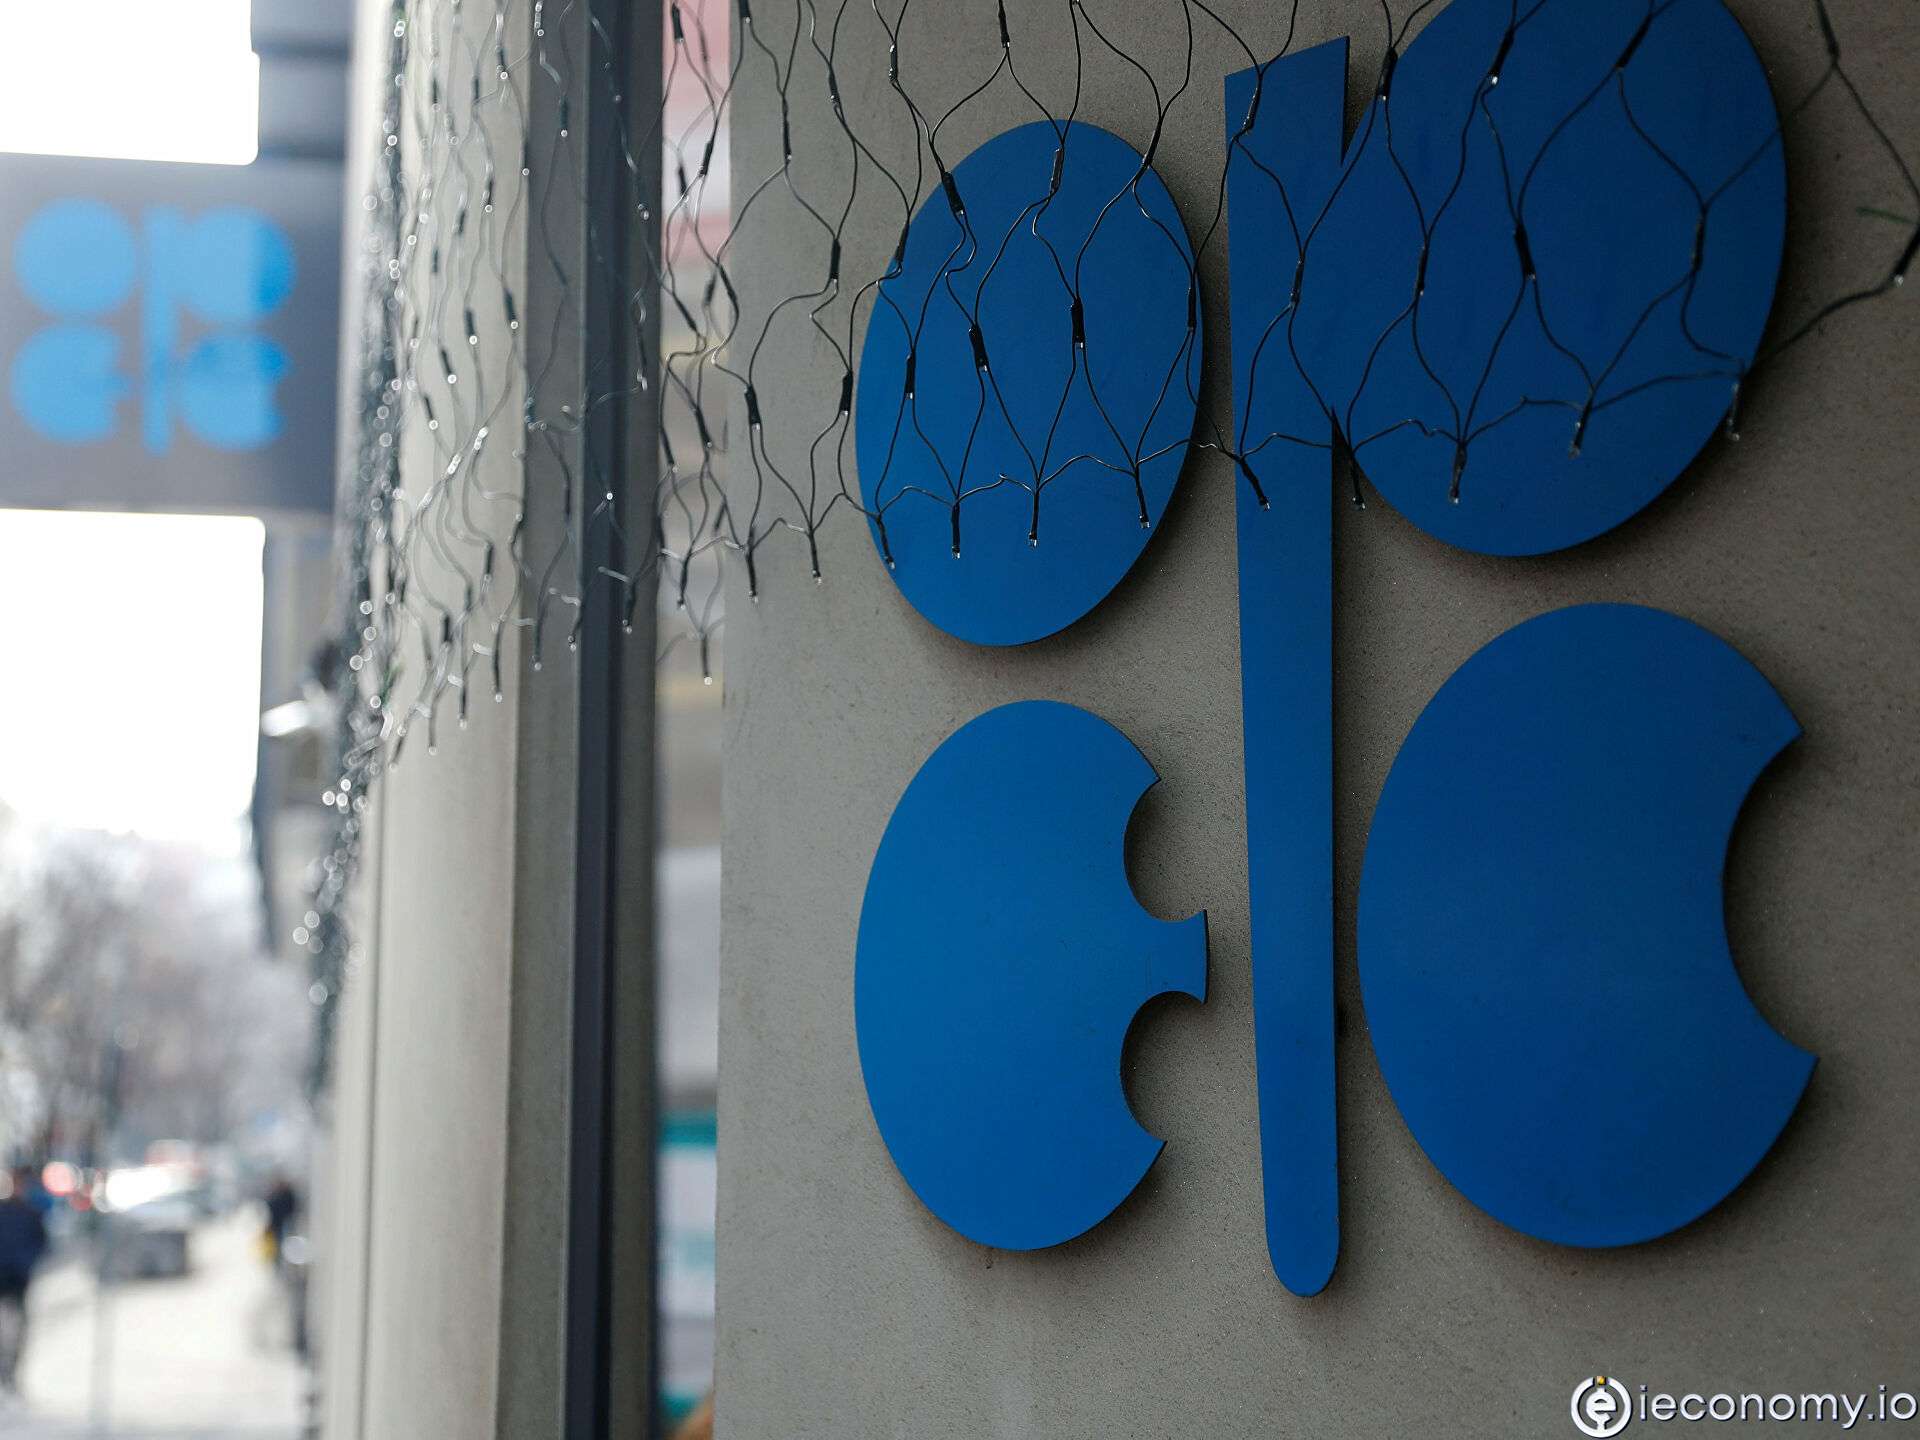 OPEC +, üretimi artırma planını değiştirmeden bırakmayı onayladı